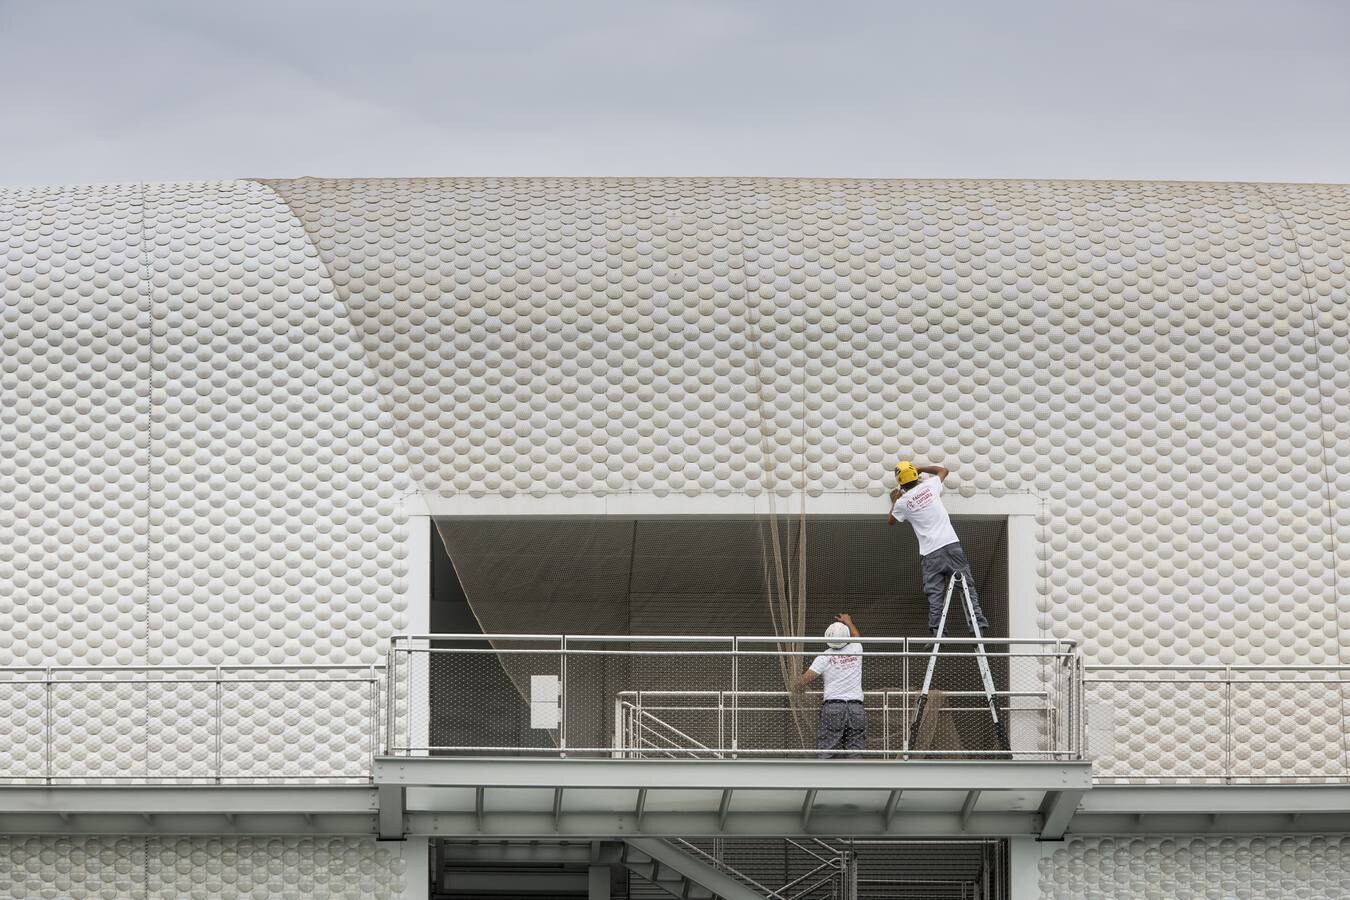 Fotos: Trabajos de instalación de una red para cubrir la fachada del Centro Botín por los problemas detectados en las piezas de cerámica que cubren la estructura